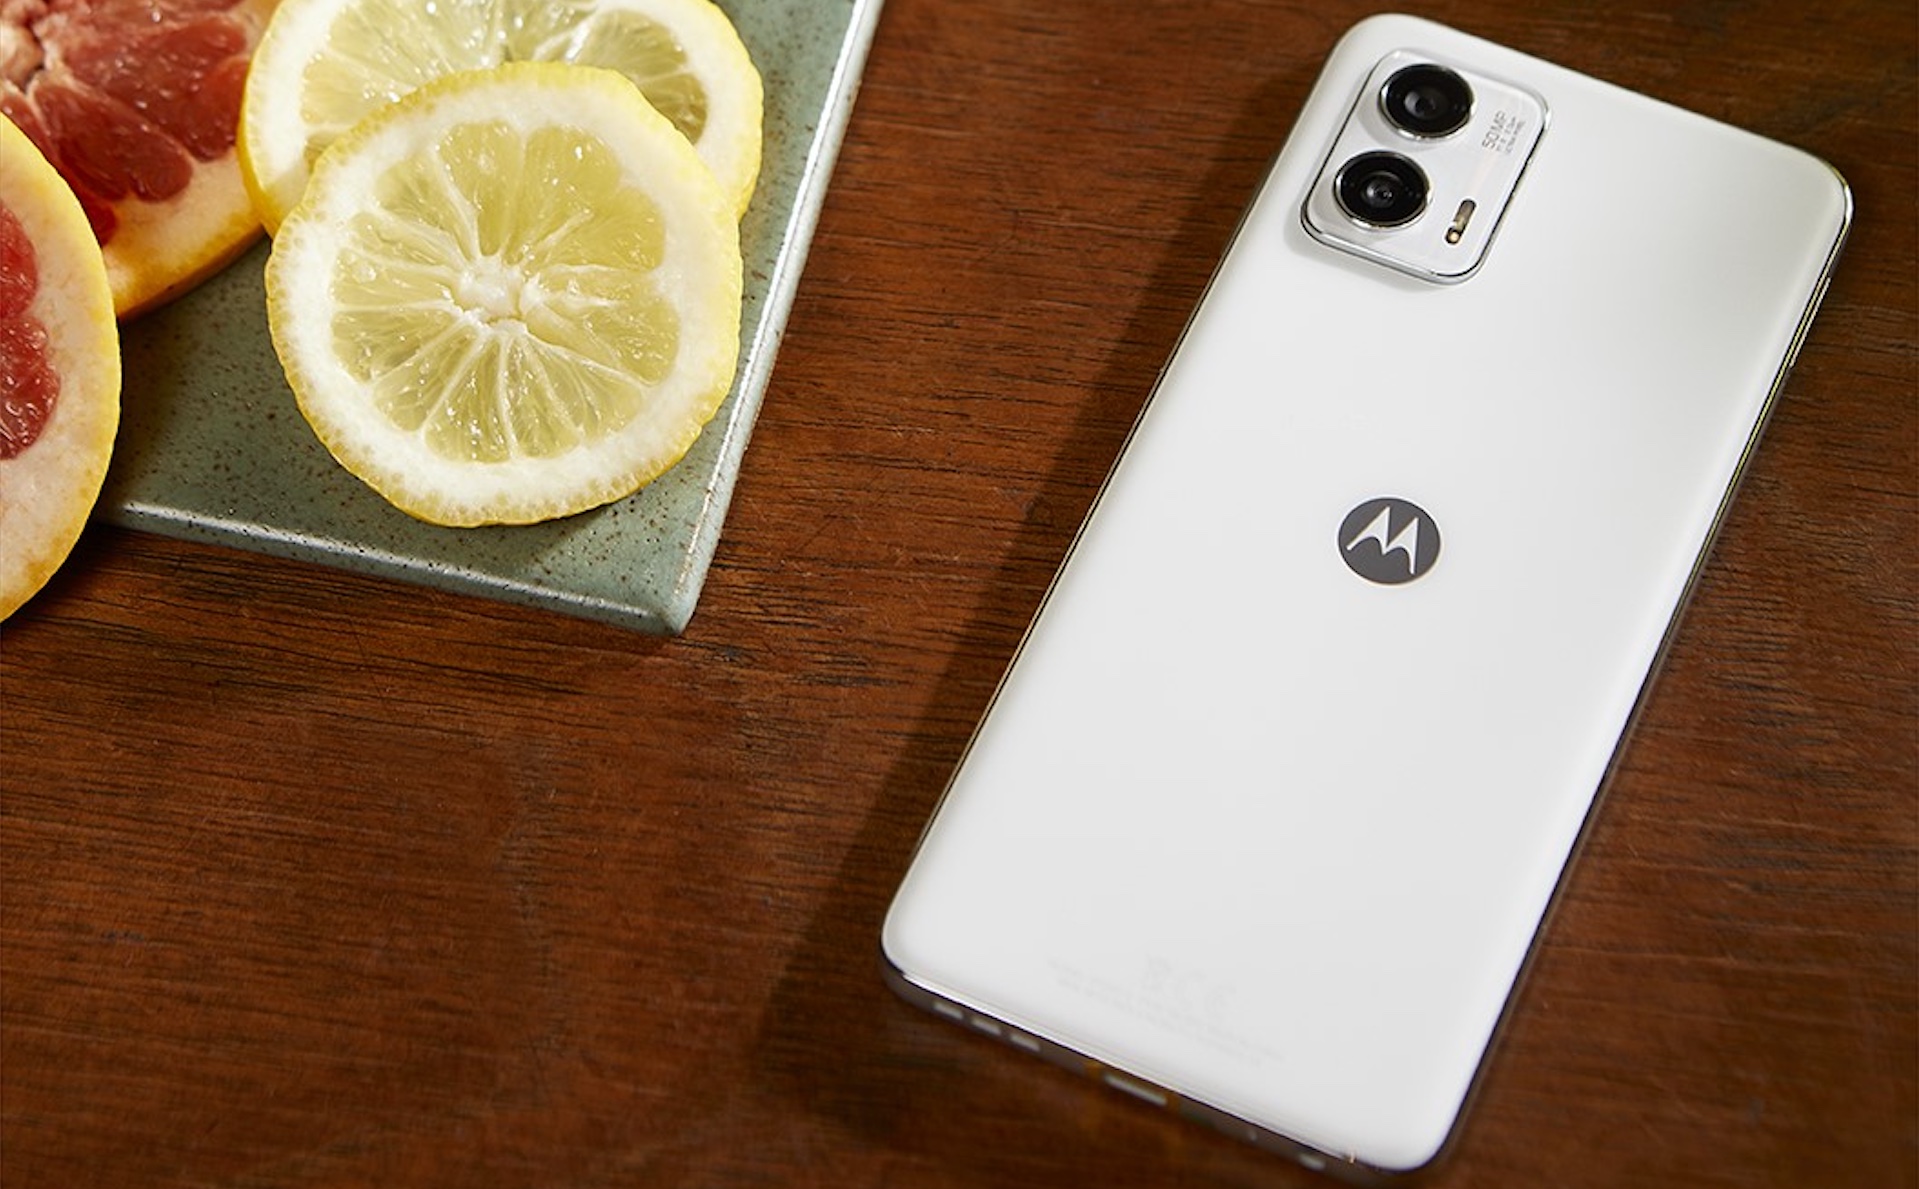 Fler nya billiga mobiler från Motorola